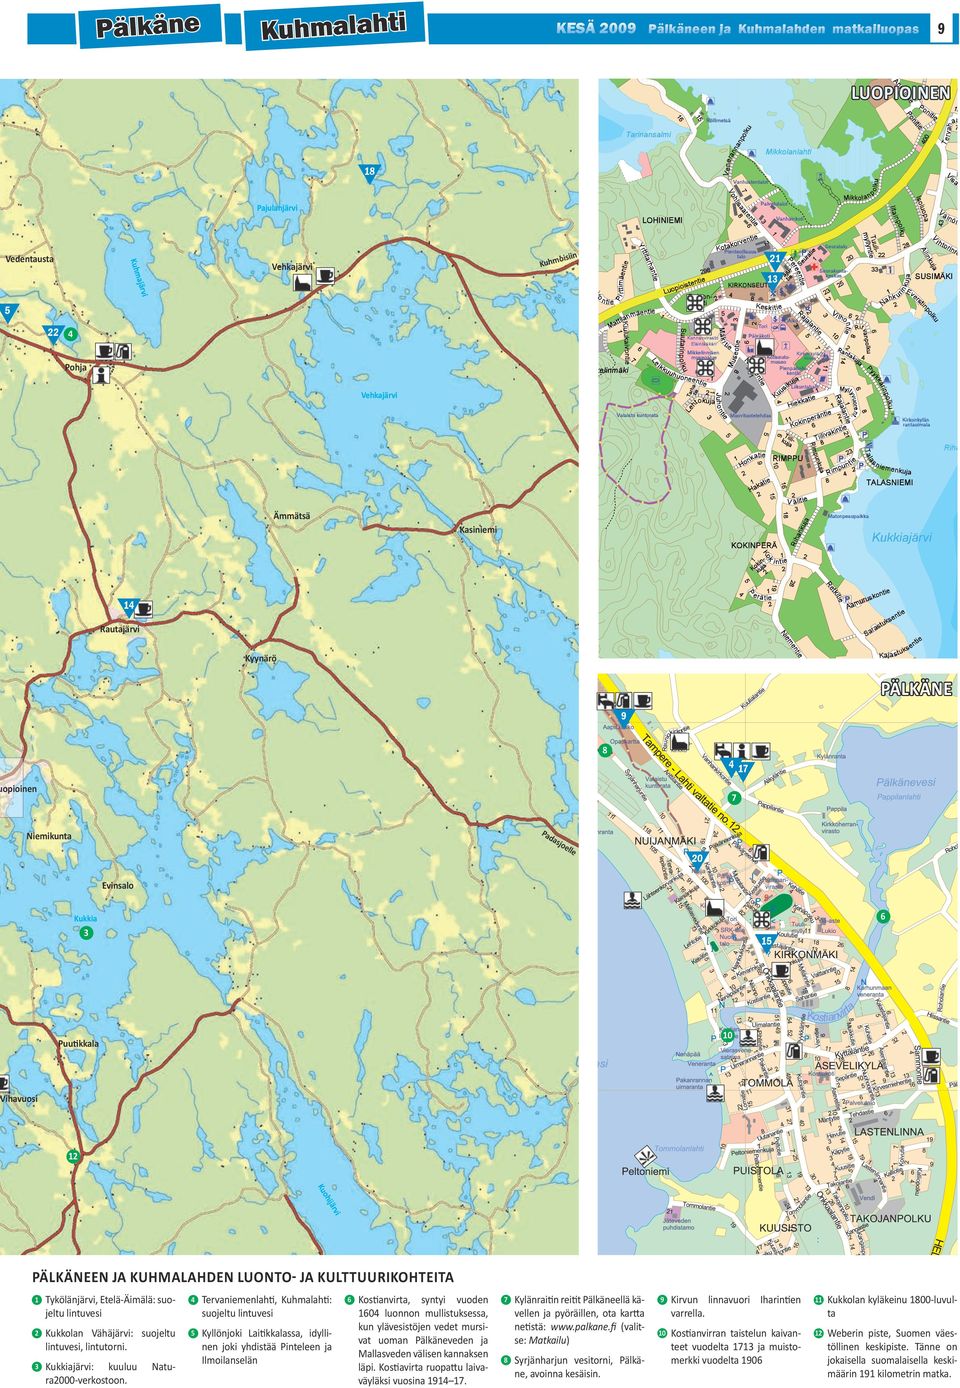 Tykölänjärvi, Etelä-Äimälä: suojeltu lintuvesi 4 2 Kukkolan Vähäjärvi: suojeltu lintuvesi, lintutorni. 5 3 Kukkiajärvi: kuuluu ra2000-verkostoon.